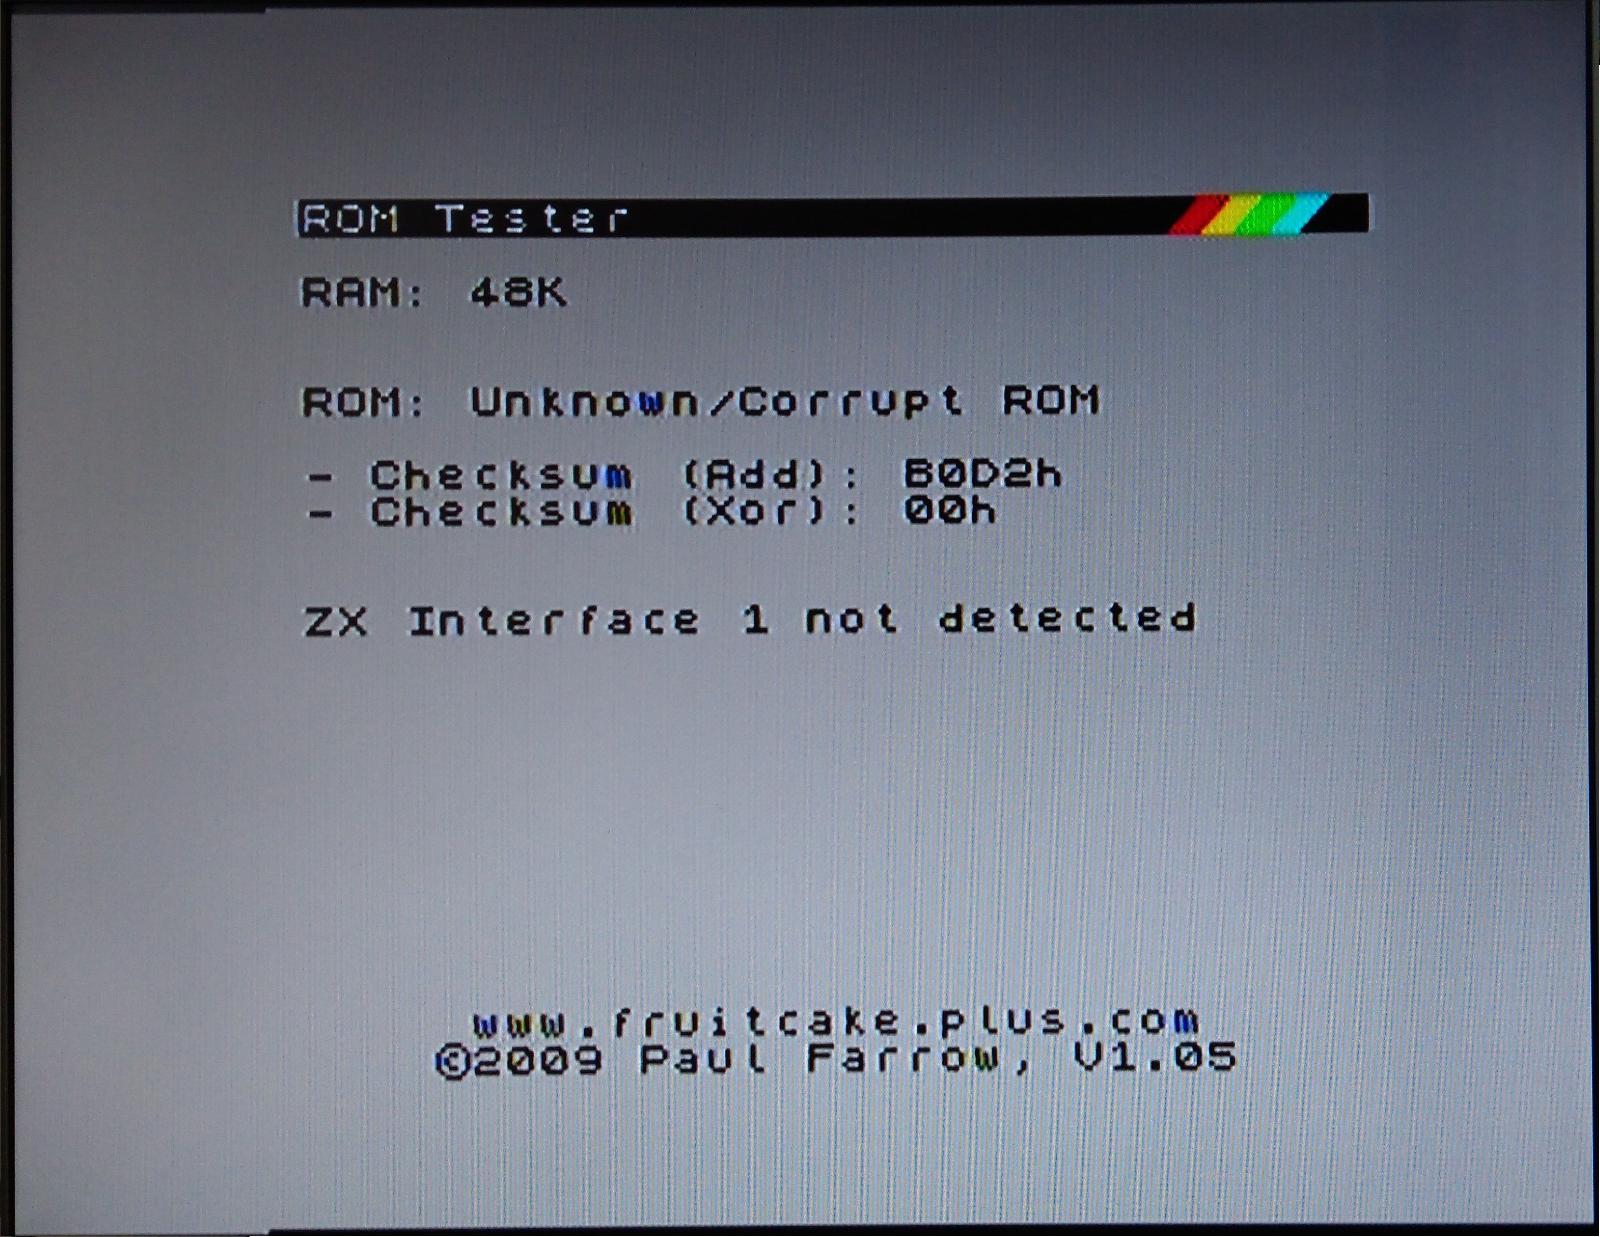 externá diagnostická ROM pre počitače ZX spectrum - Počítače a hry